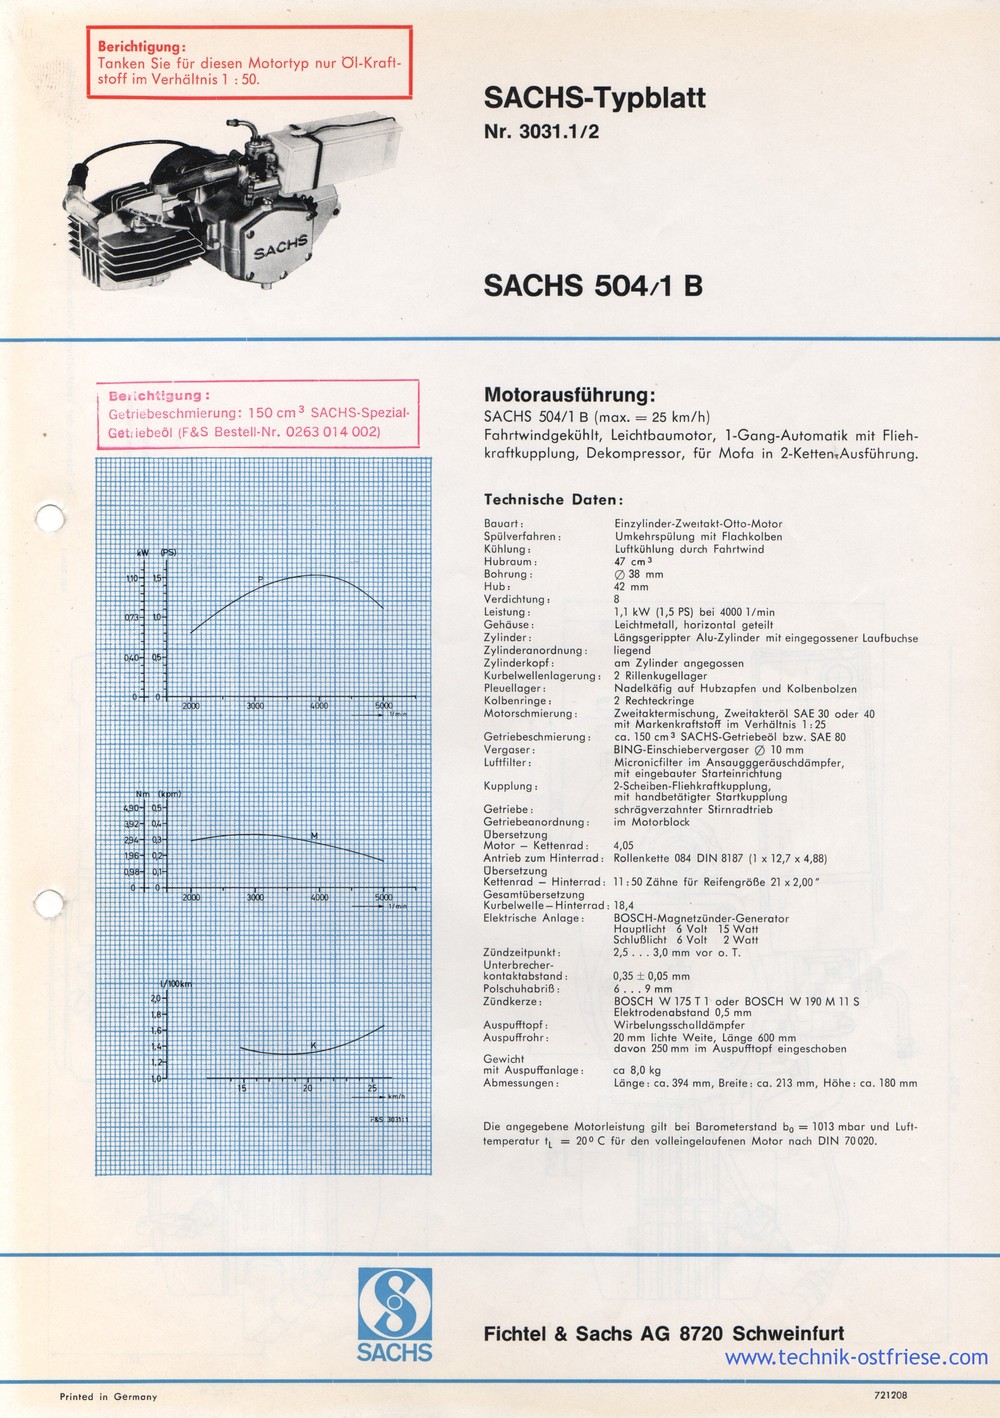 SACHS Typblatt 504/1 B | Motorausführung | Technische Daten | Drehzahl - PS | Drehzahl - Nm | Geschwindigkeit - Verbrauch
